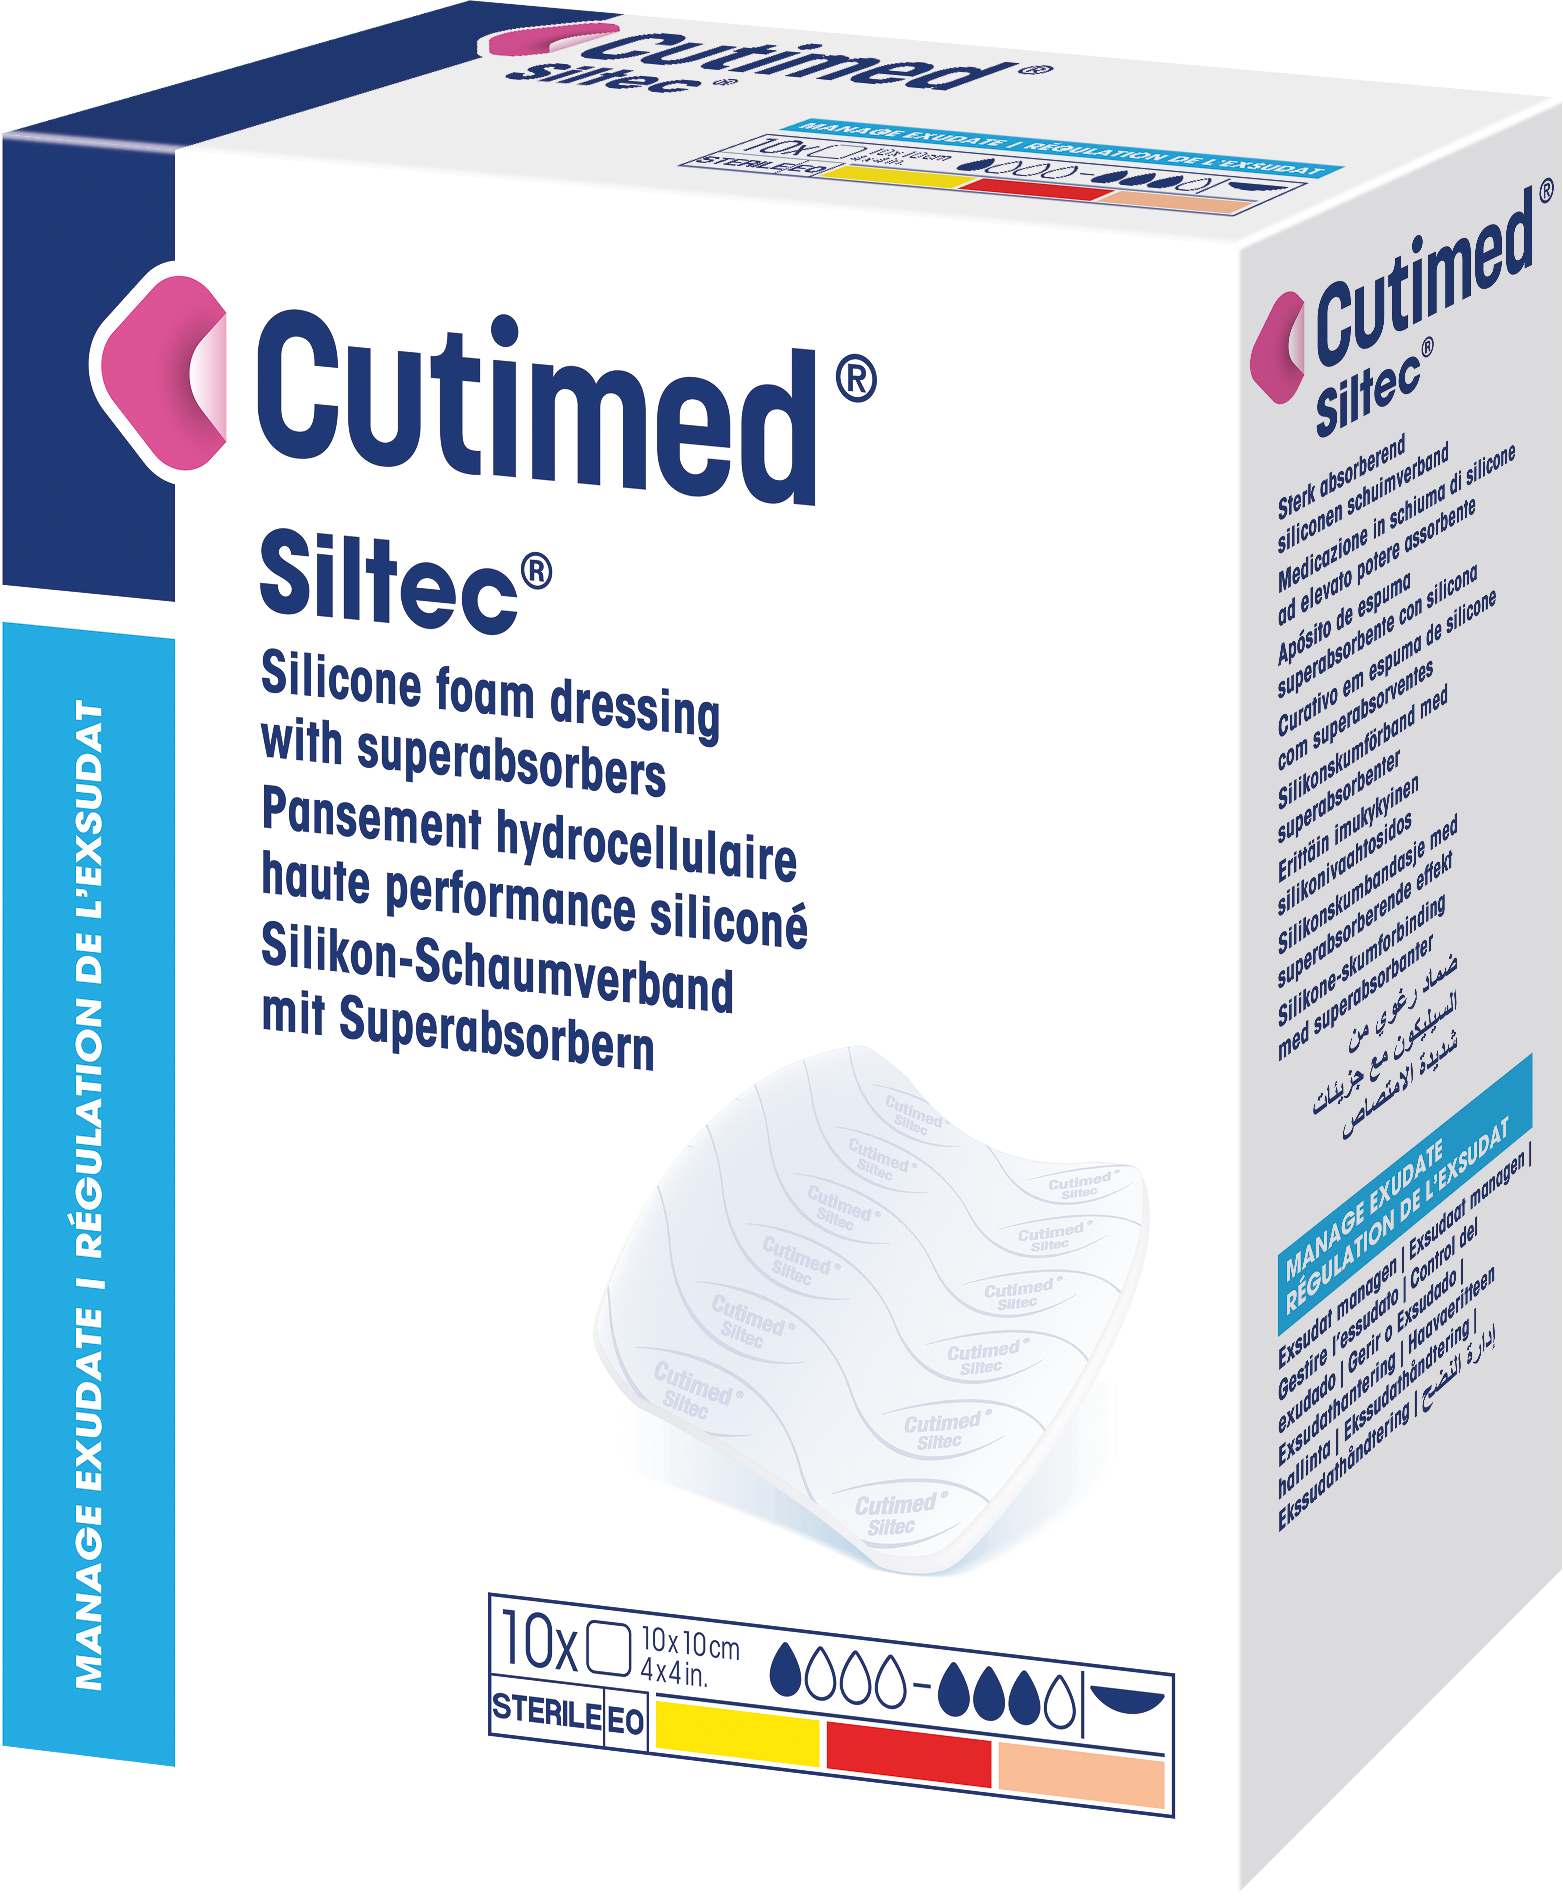 Immagine di una confezione di Cutimed® Siltec®